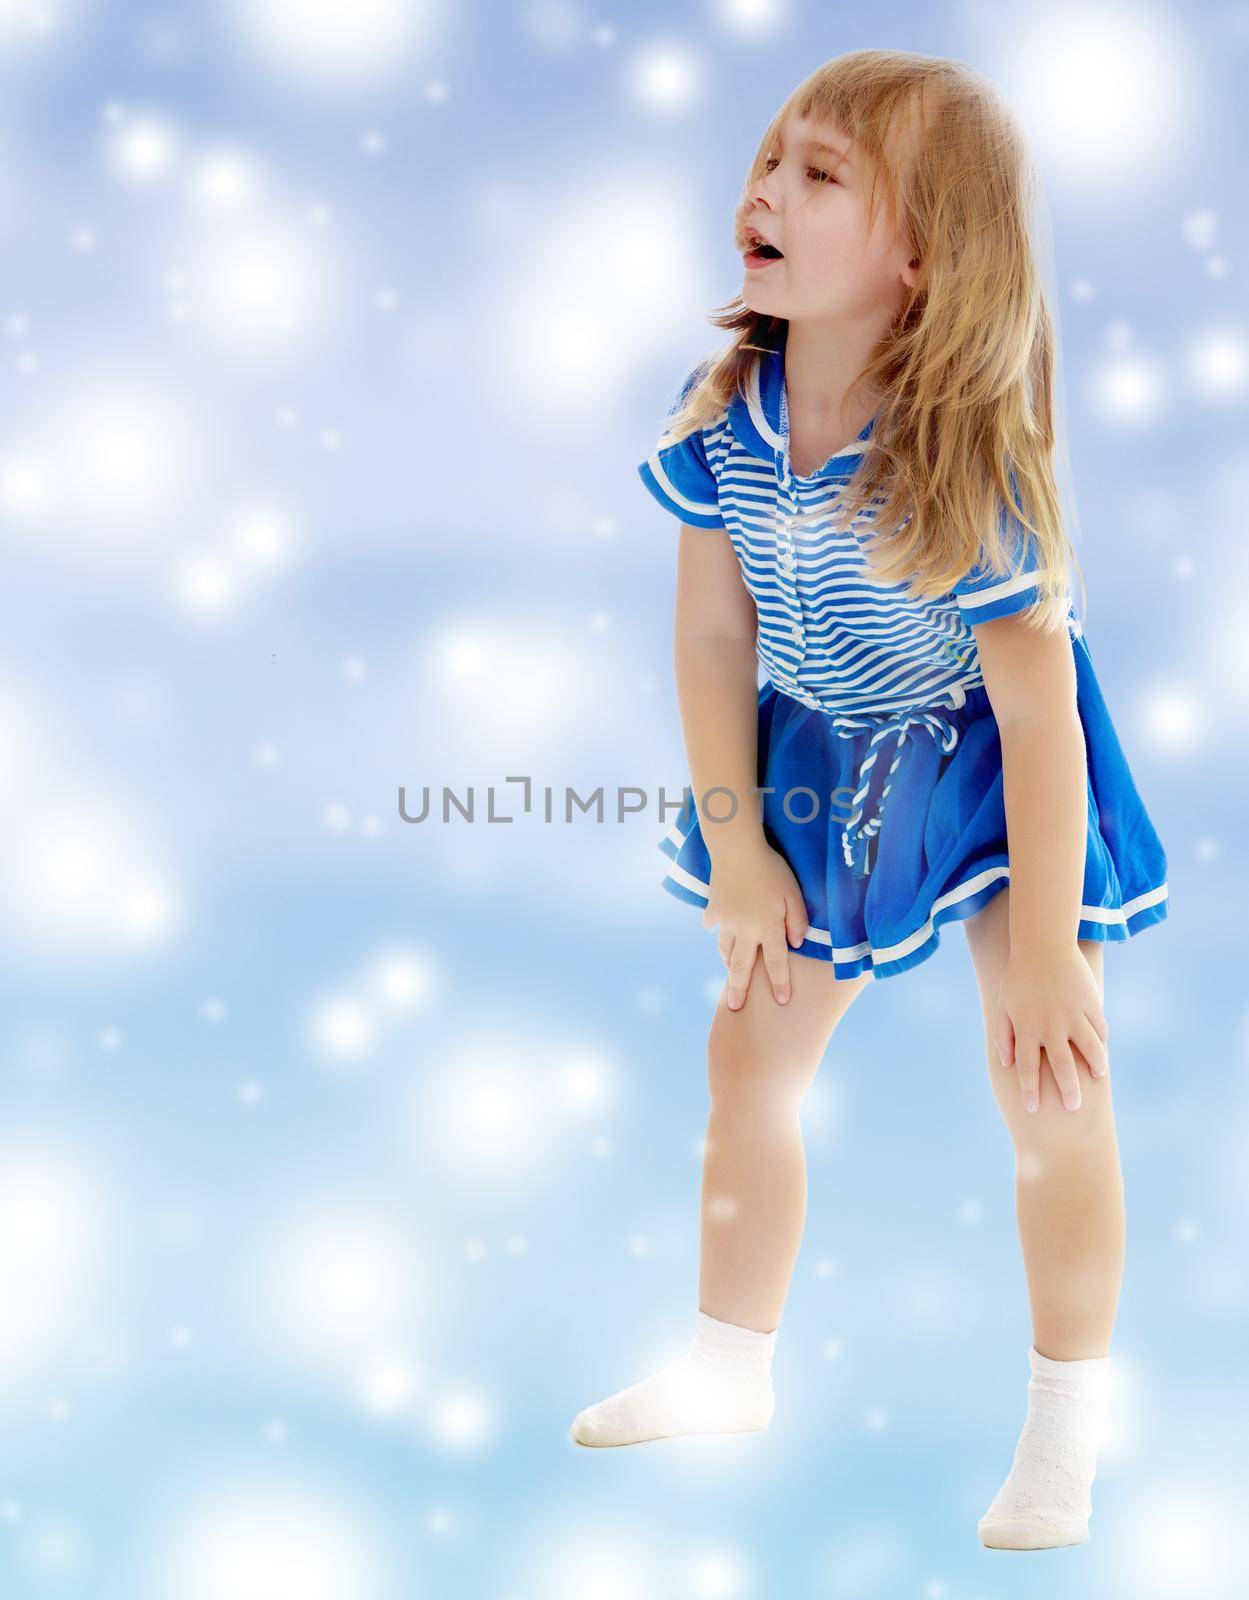 Unkempt little girl by kolesnikov_studio